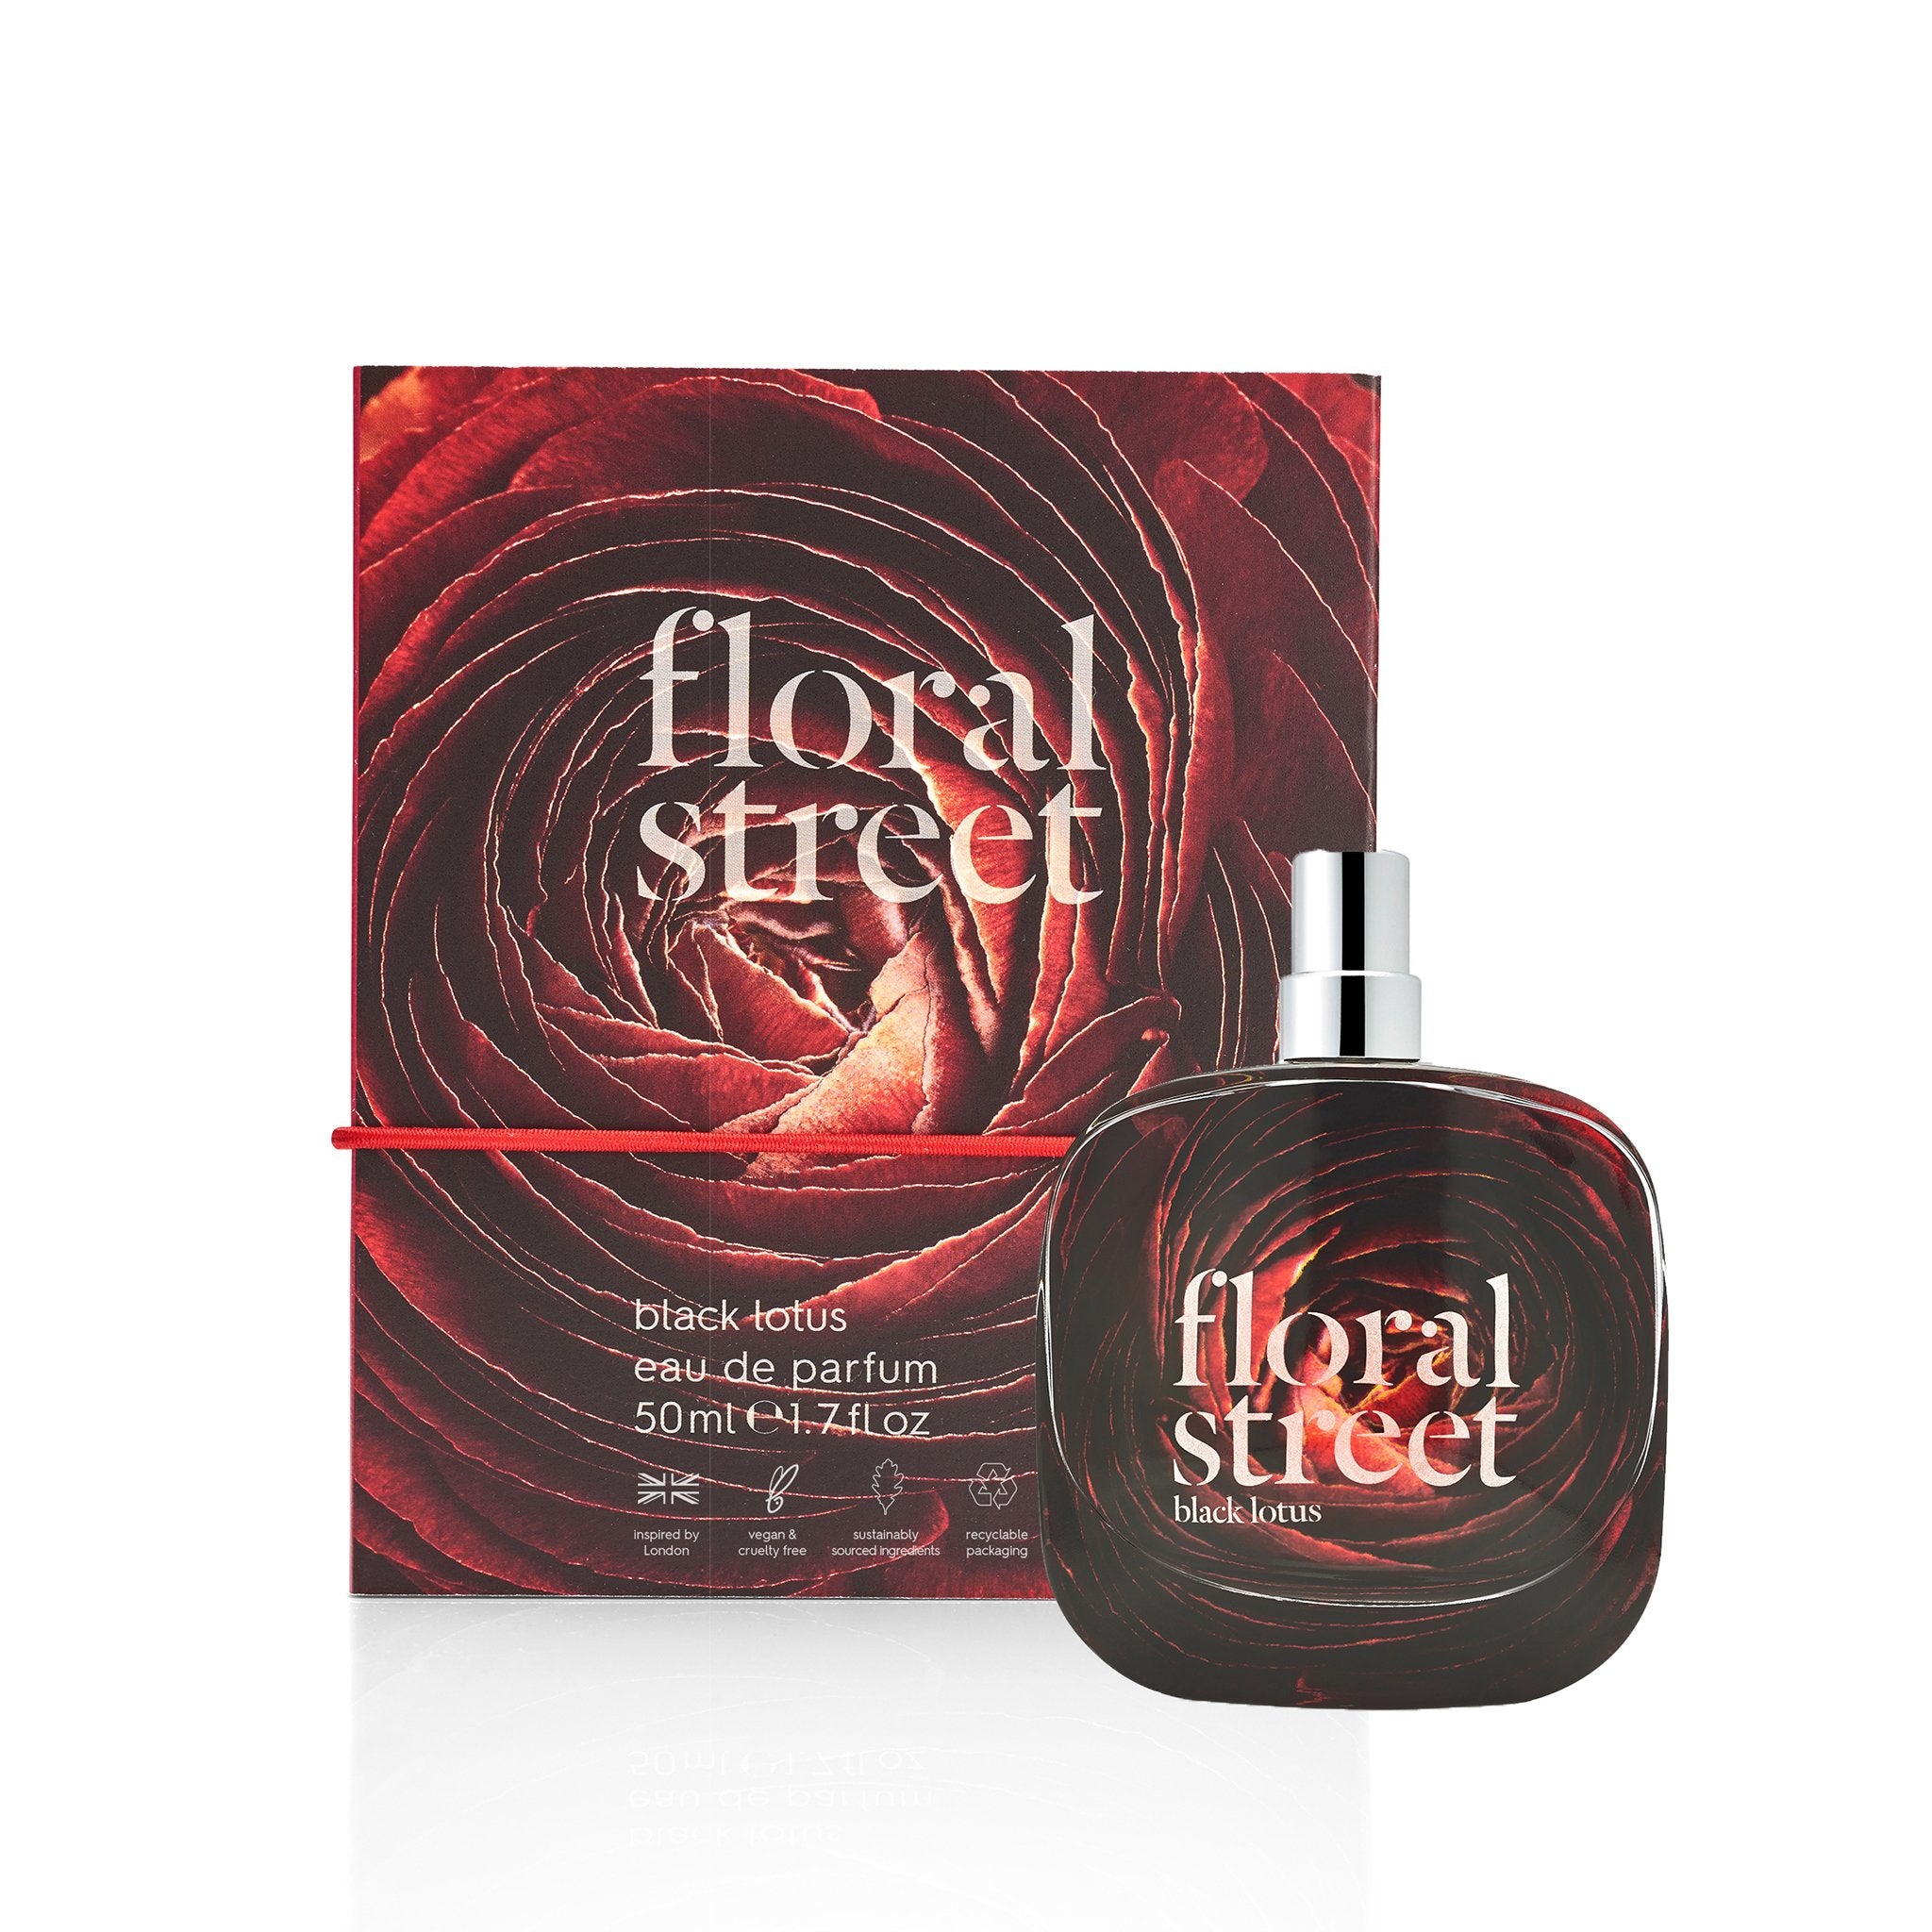 Floral Street black lotus eau de parfum